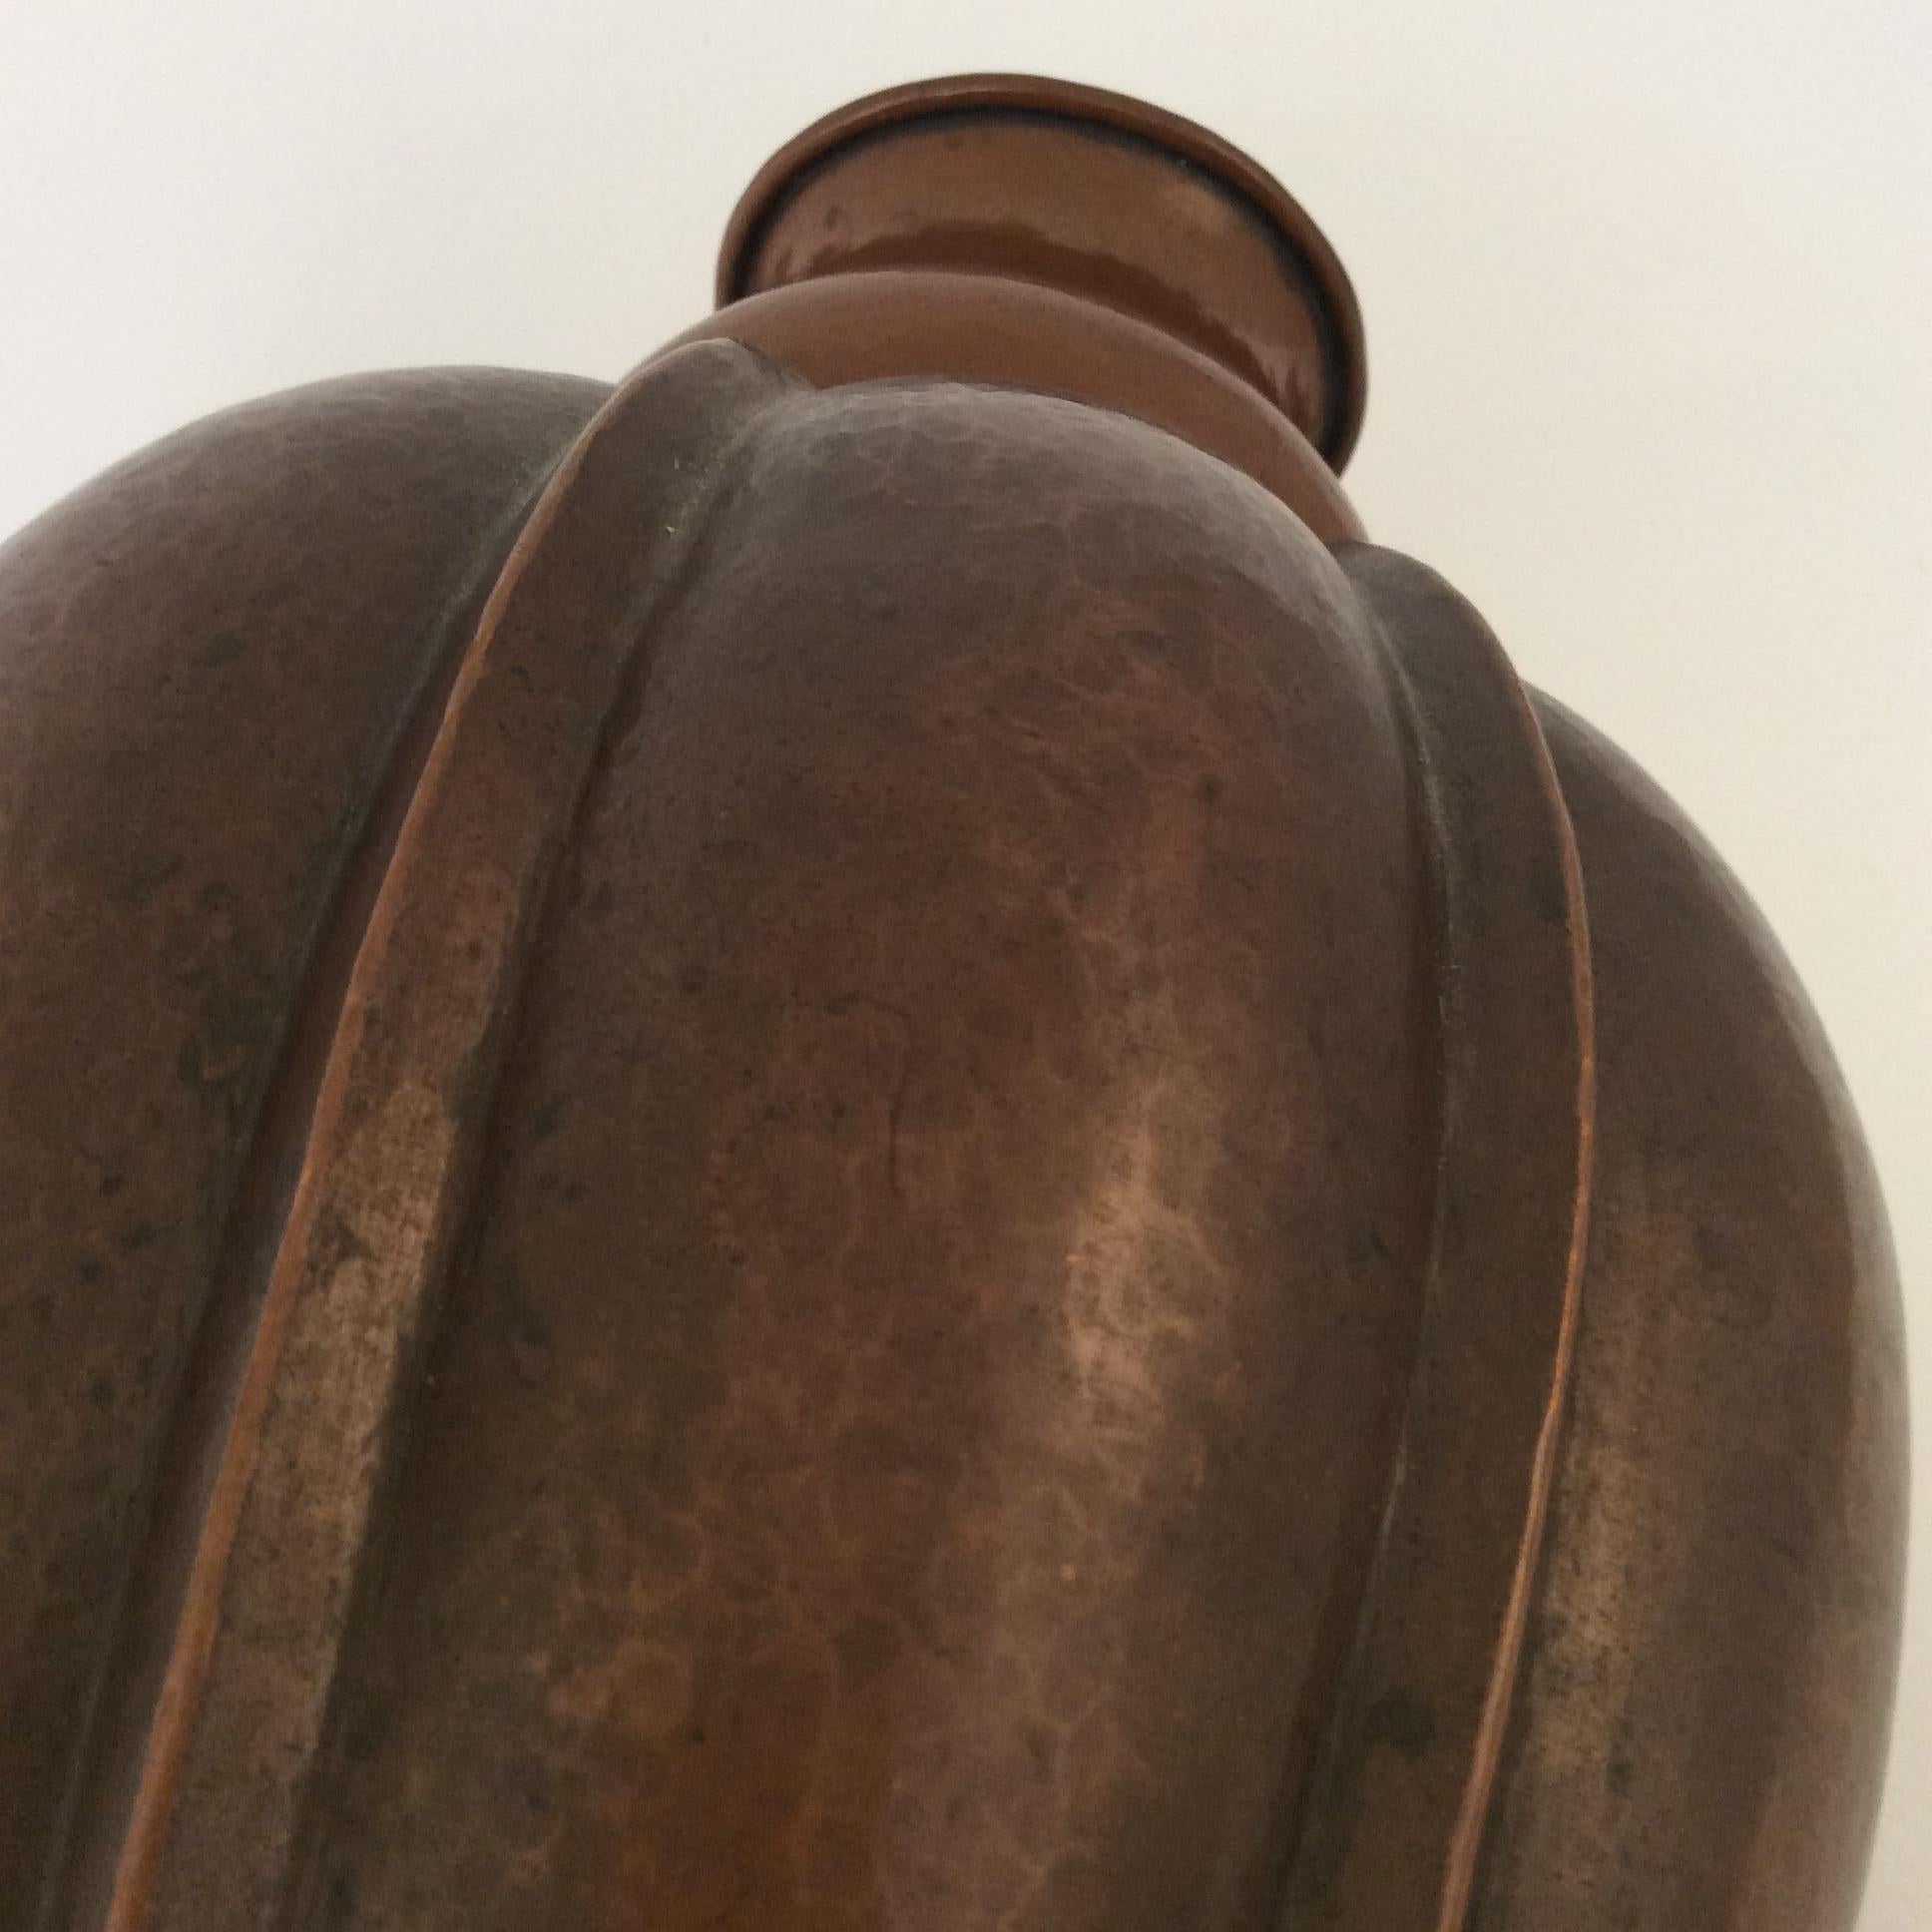 Vittorio Zecchin Patinated Copper Vase, circa 1926, Italy (Moderne der Mitte des Jahrhunderts)